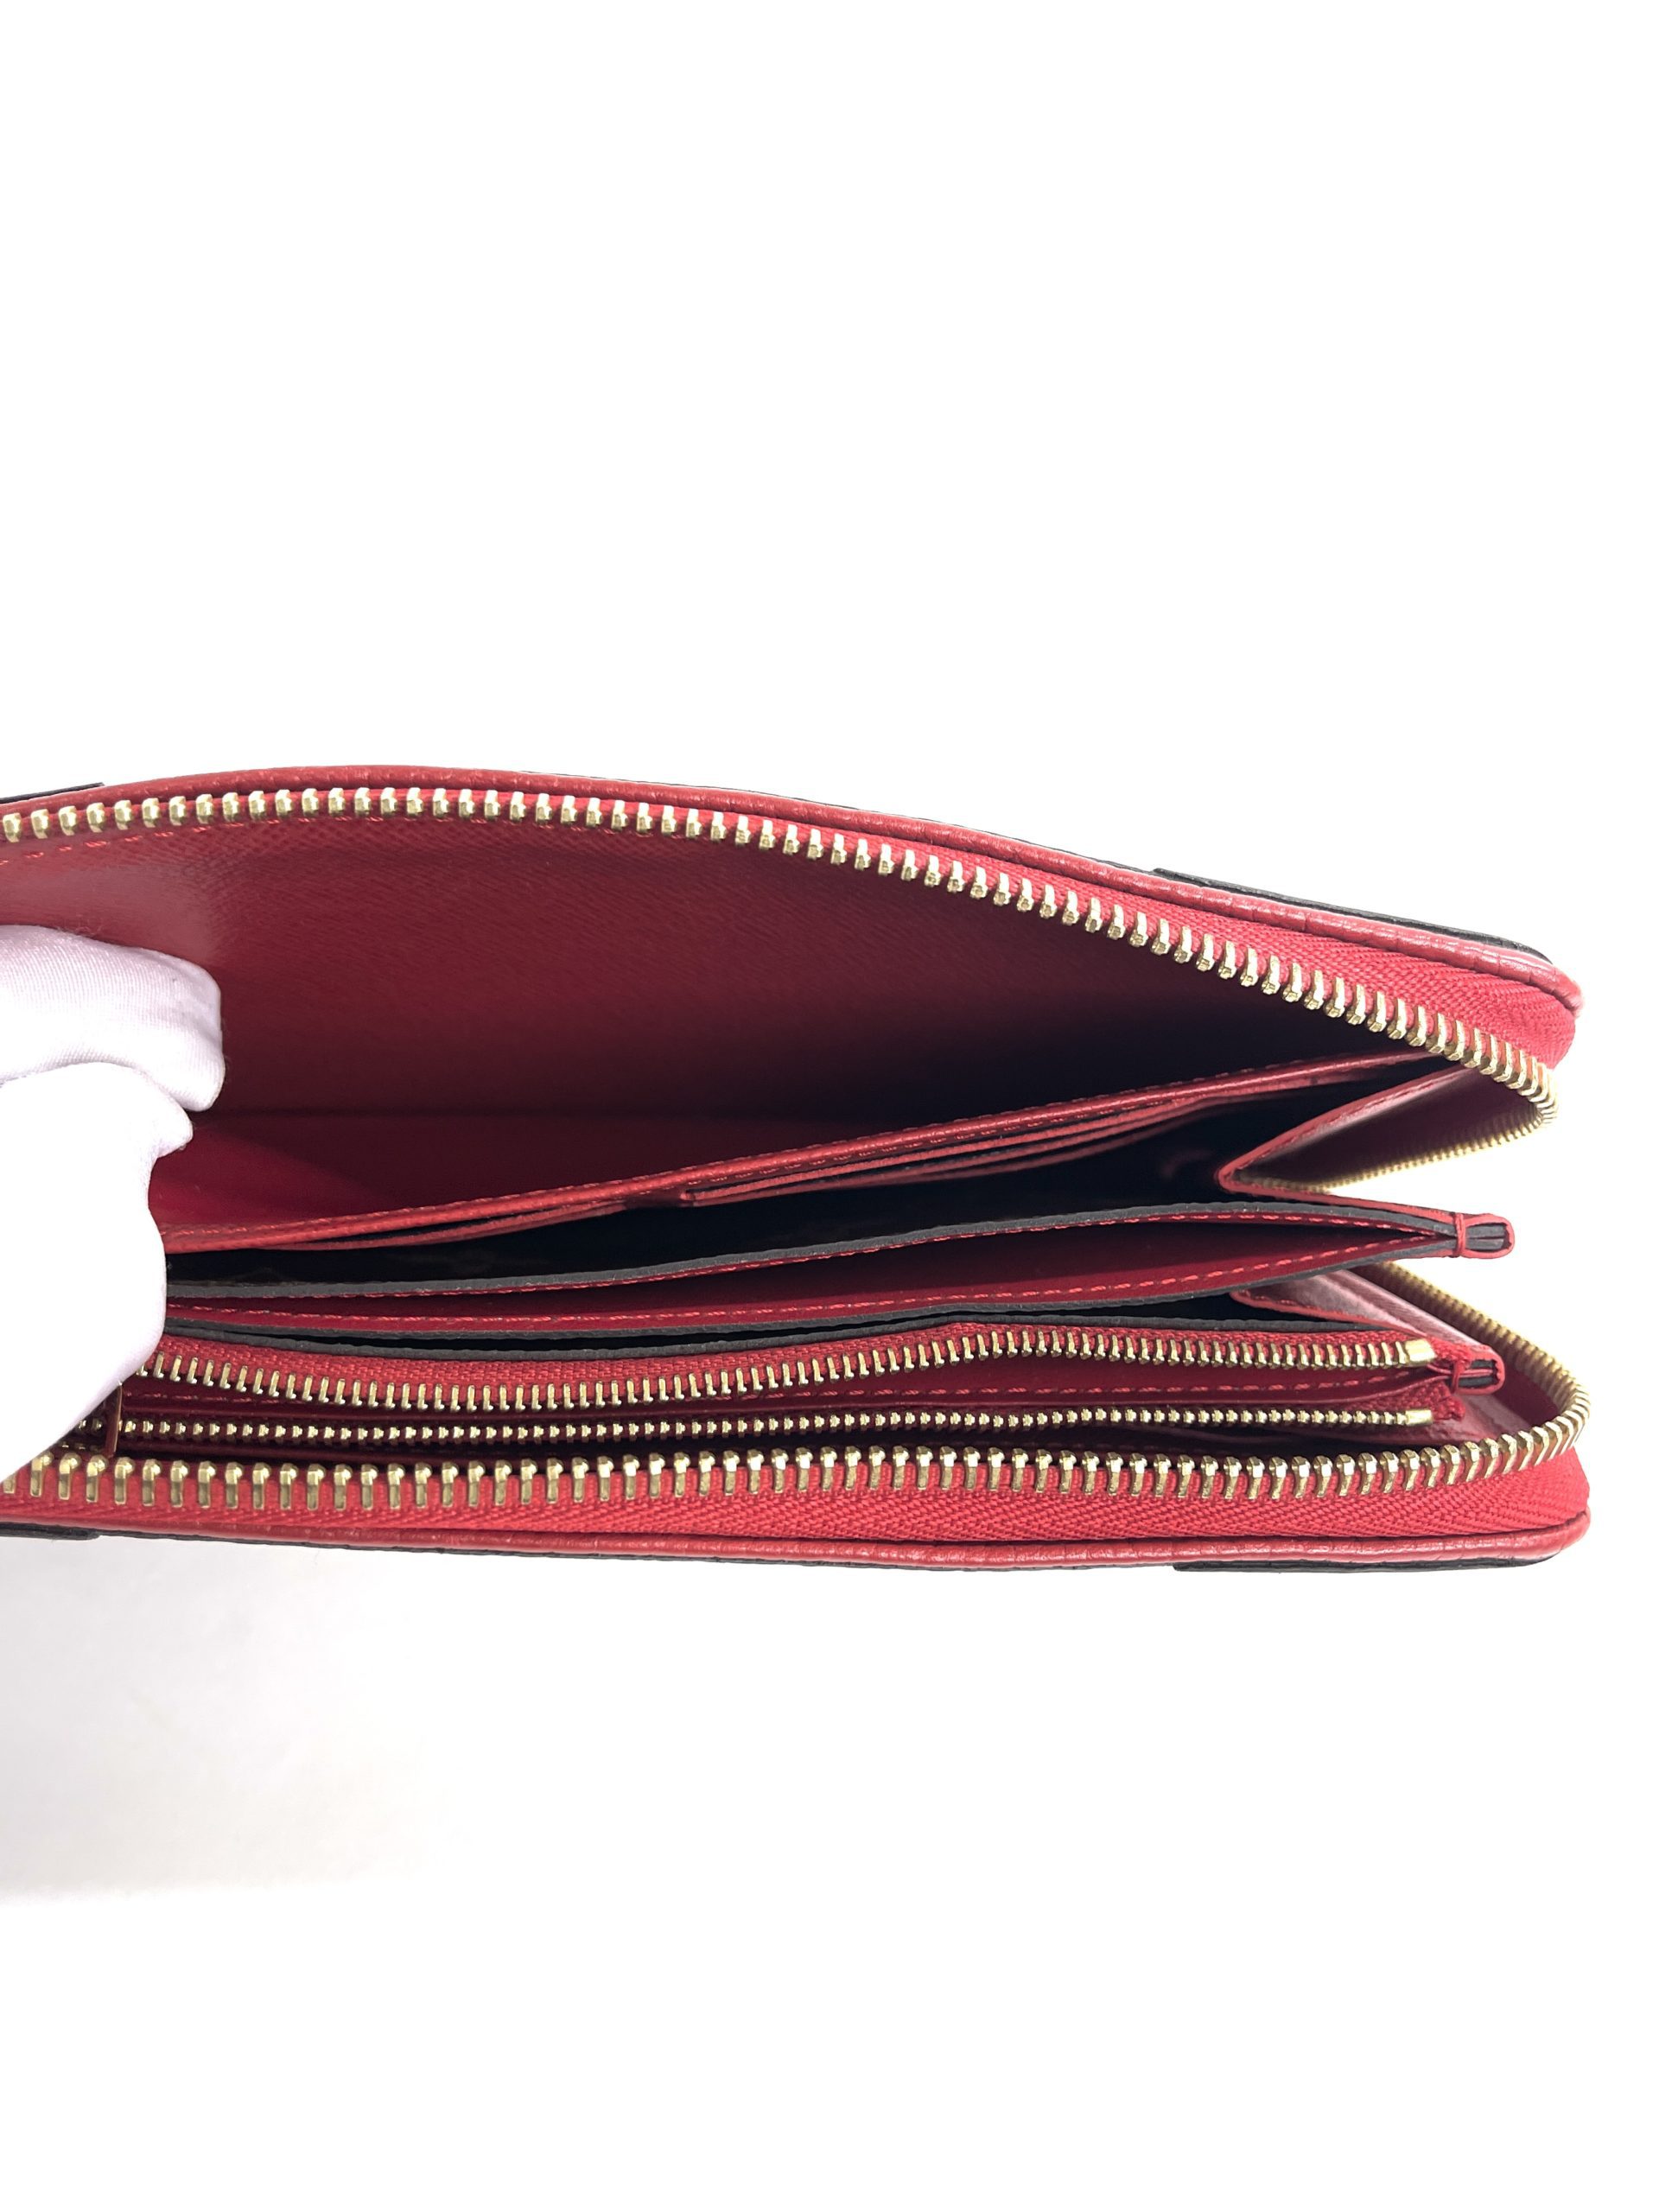 Louis Vuitton Monogram Retiro Zippy Wallet - Couture USA